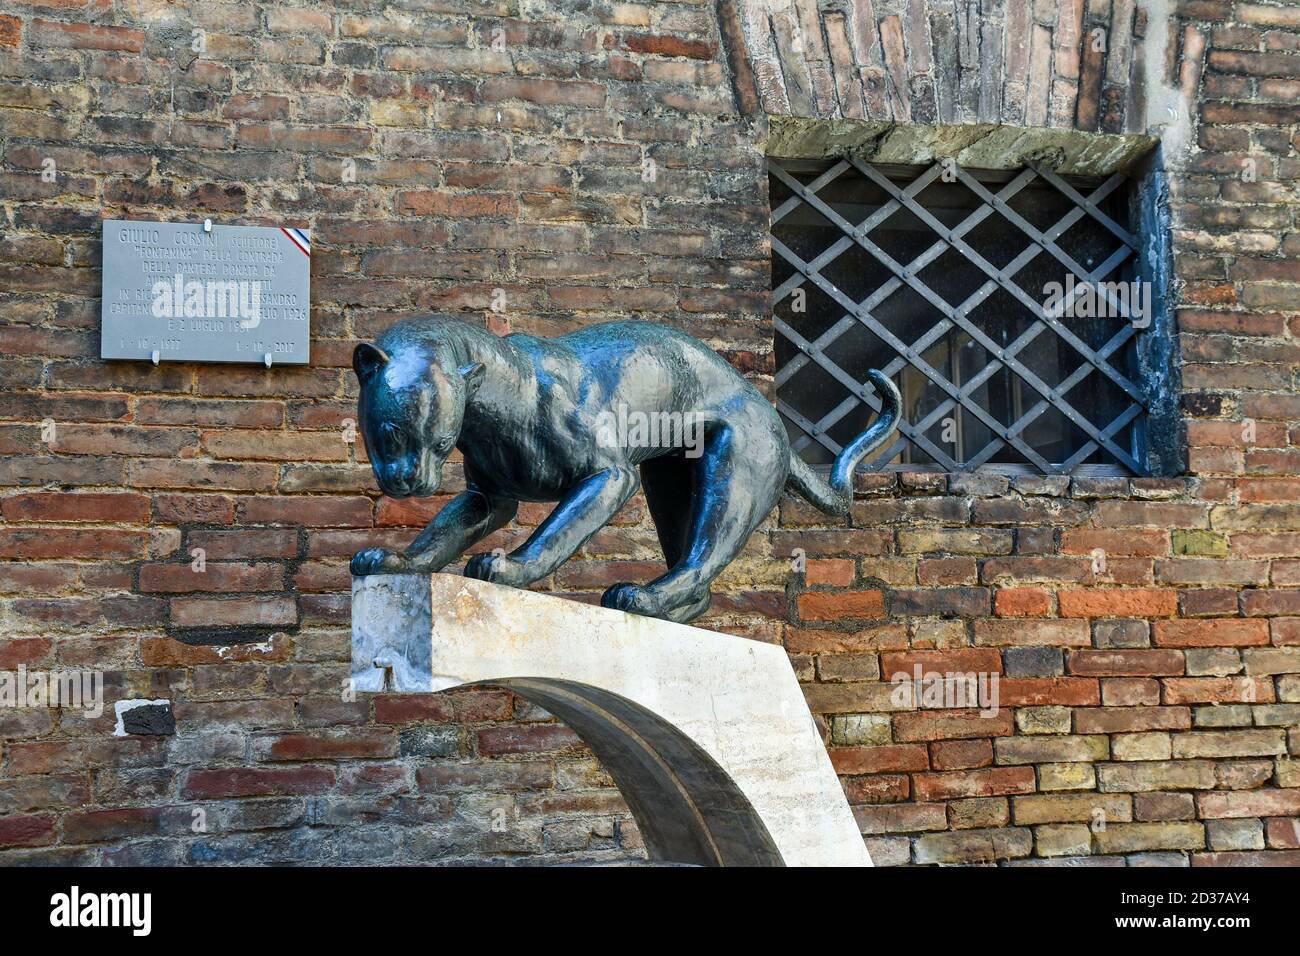 Fuente de bronce y travertino de Giulio Corsini (1977) símbolo de la Contrada della Pantera en Piazza del Conte, centro de la ciudad de Siena, Toscana, Italia Foto de stock